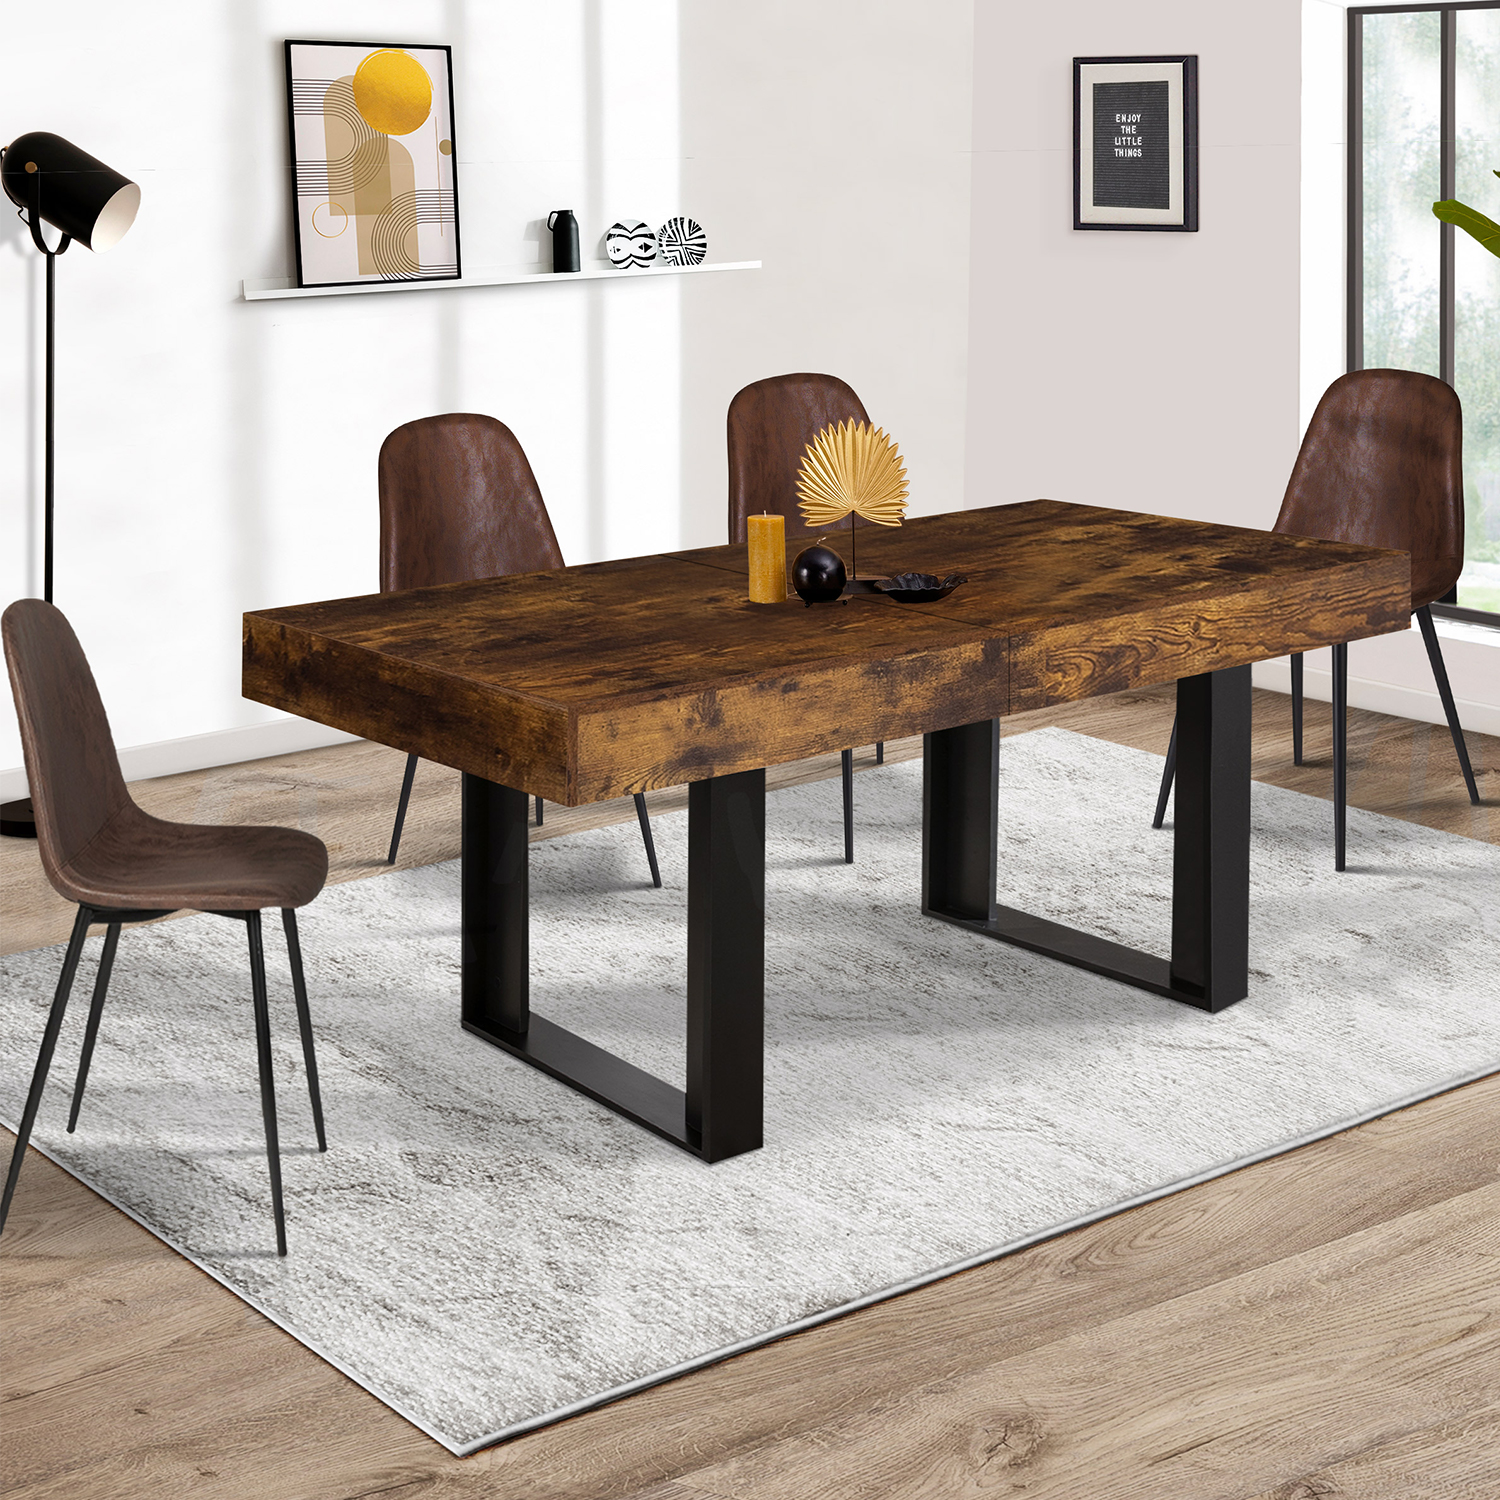 Table à manger extensible bois et noir 160 cm à 200 cm - PHOENIX